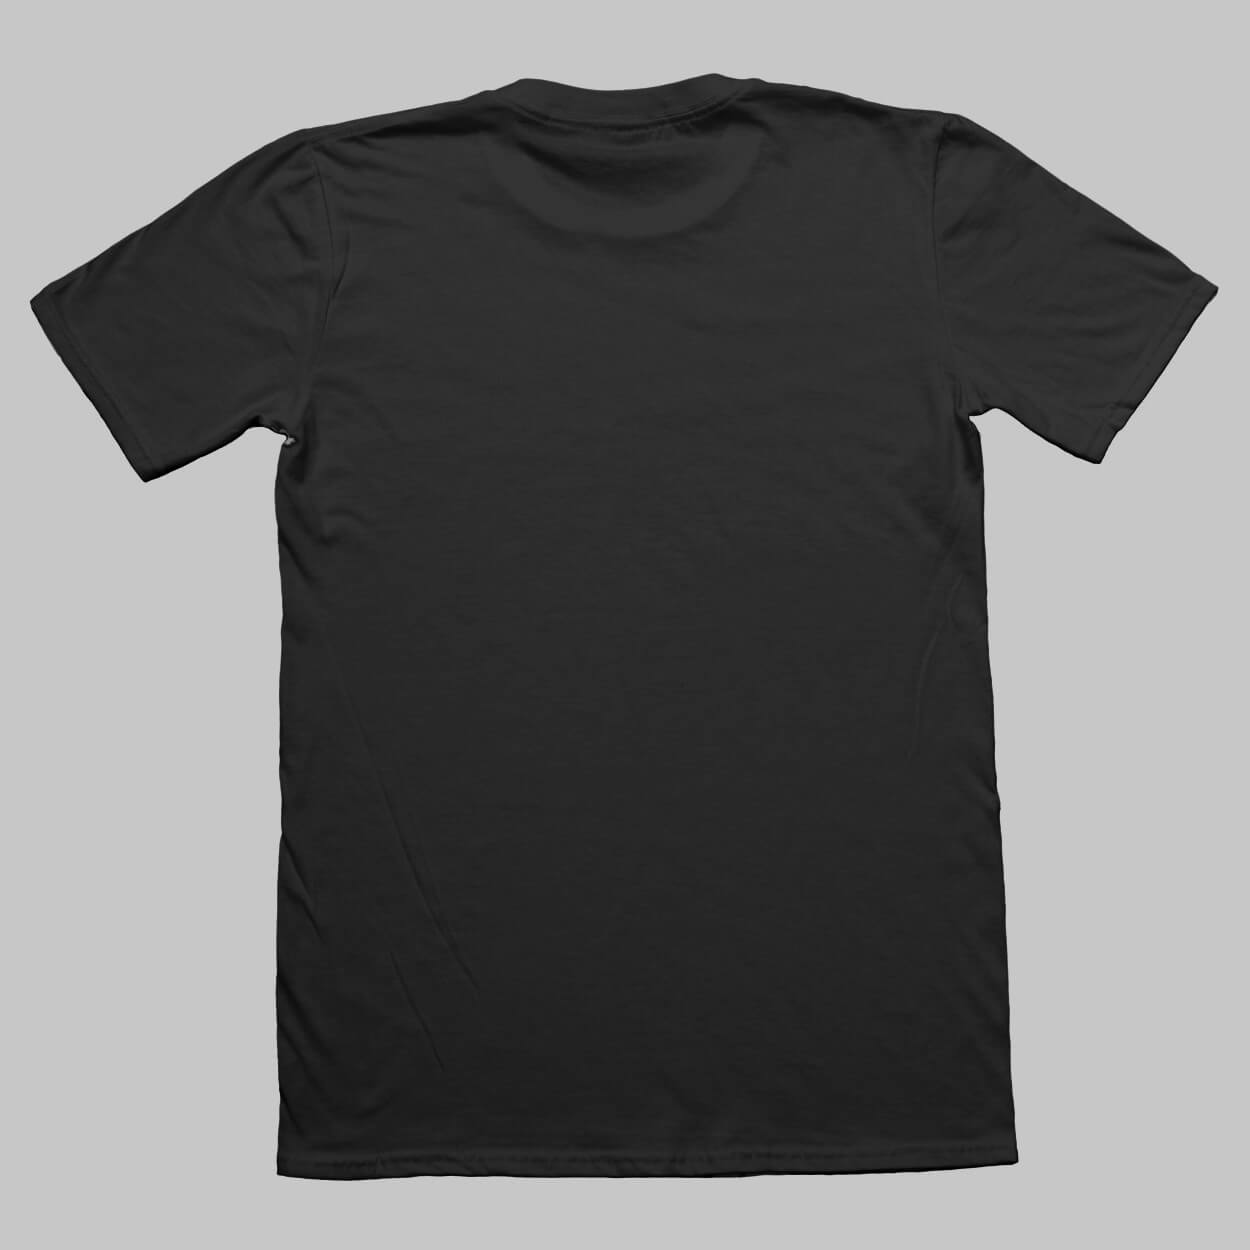 Gildan T Shirt Mockup Free